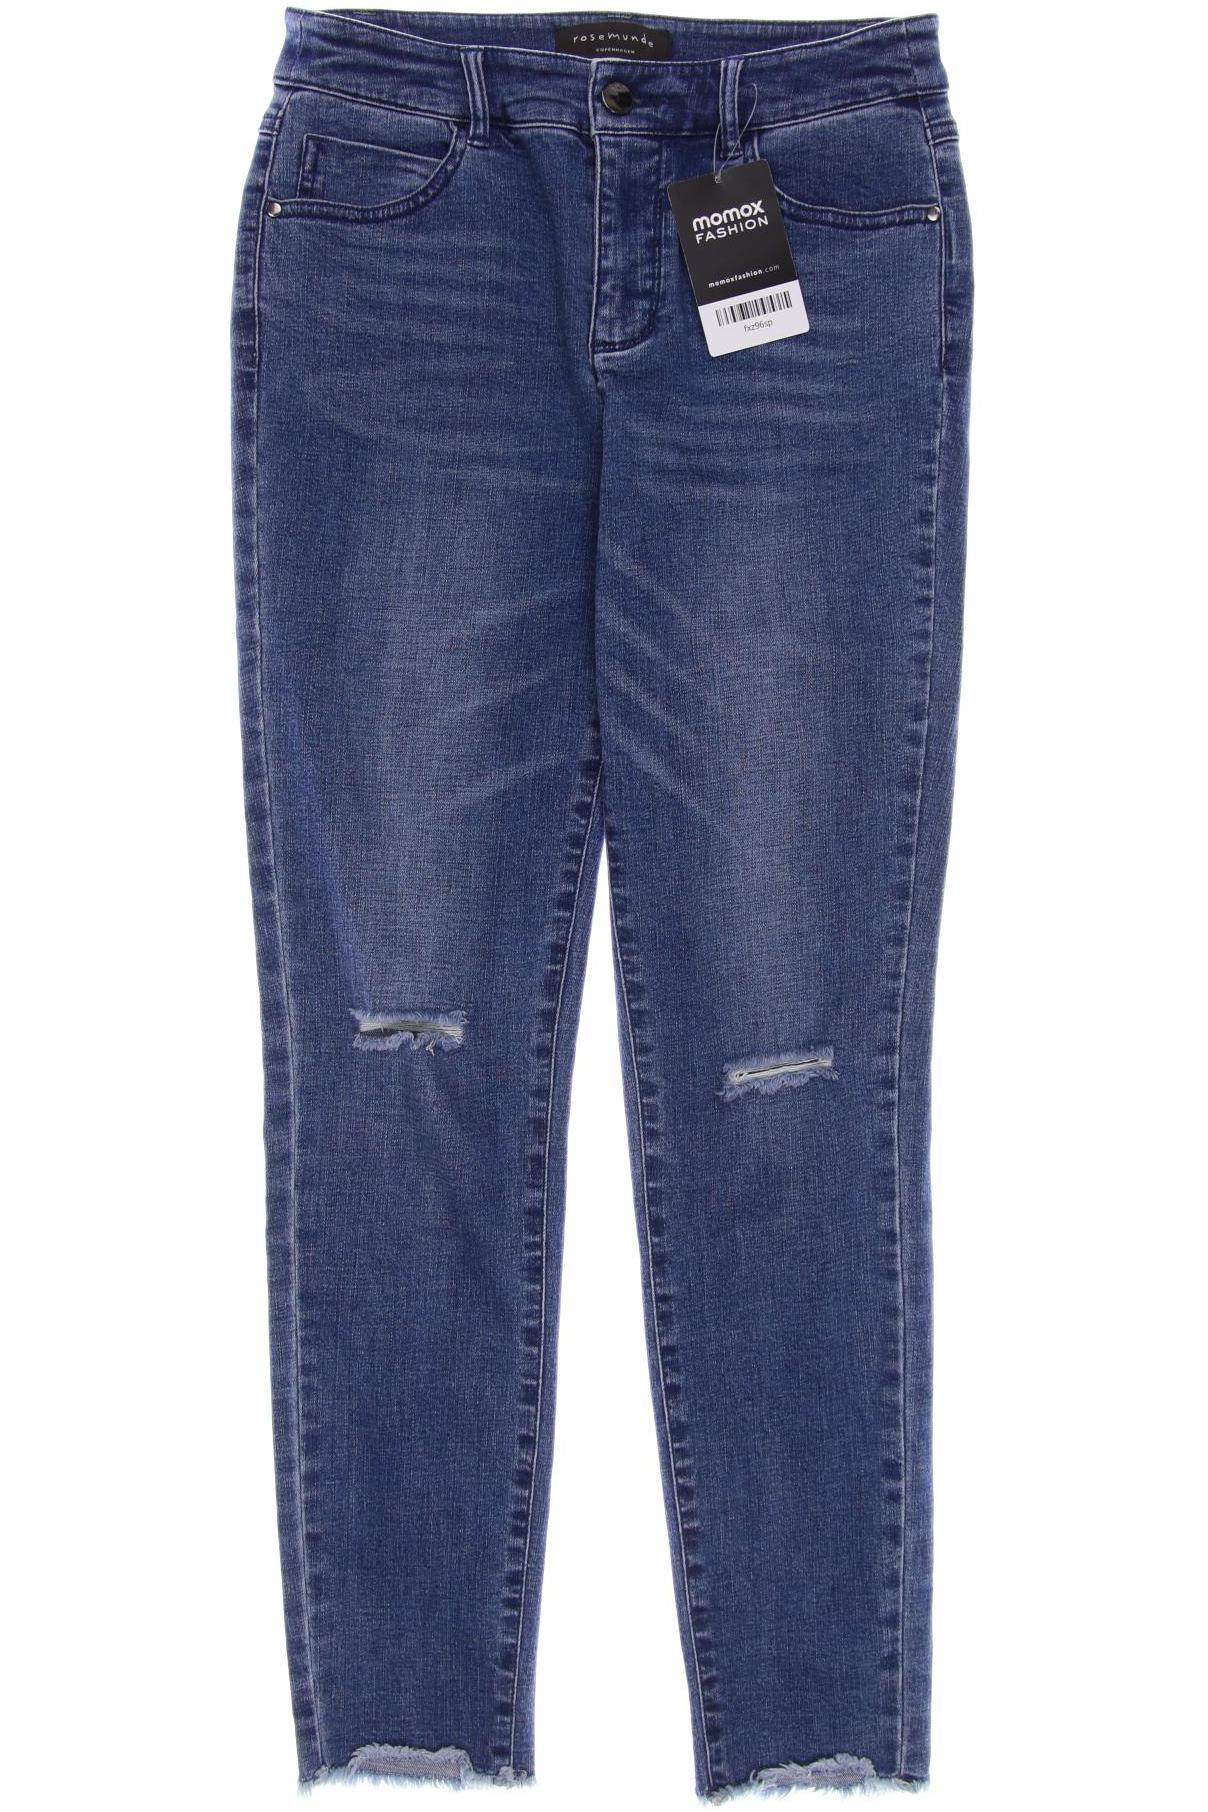 Rosemunde Damen Jeans, blau, Gr. 36 von Rosemunde